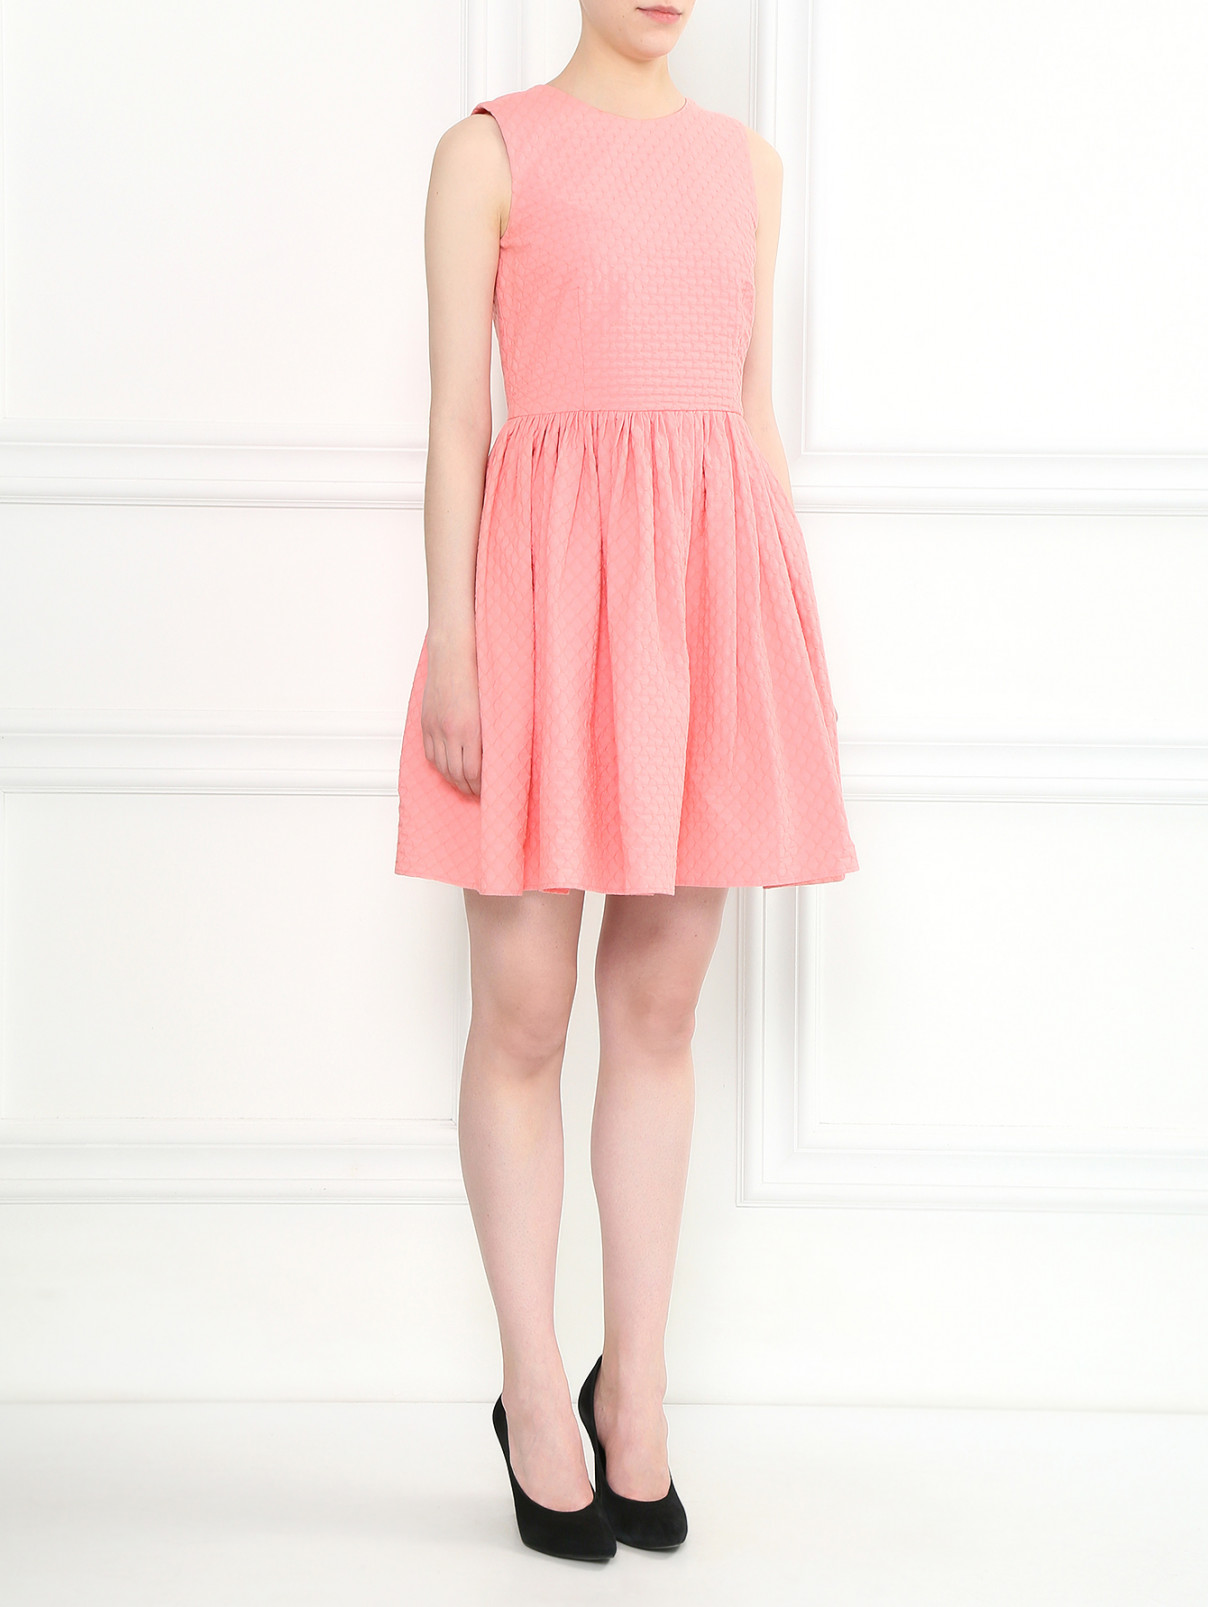 Платье-мини из хлопка Red Valentino  –  Модель Общий вид  – Цвет:  Розовый